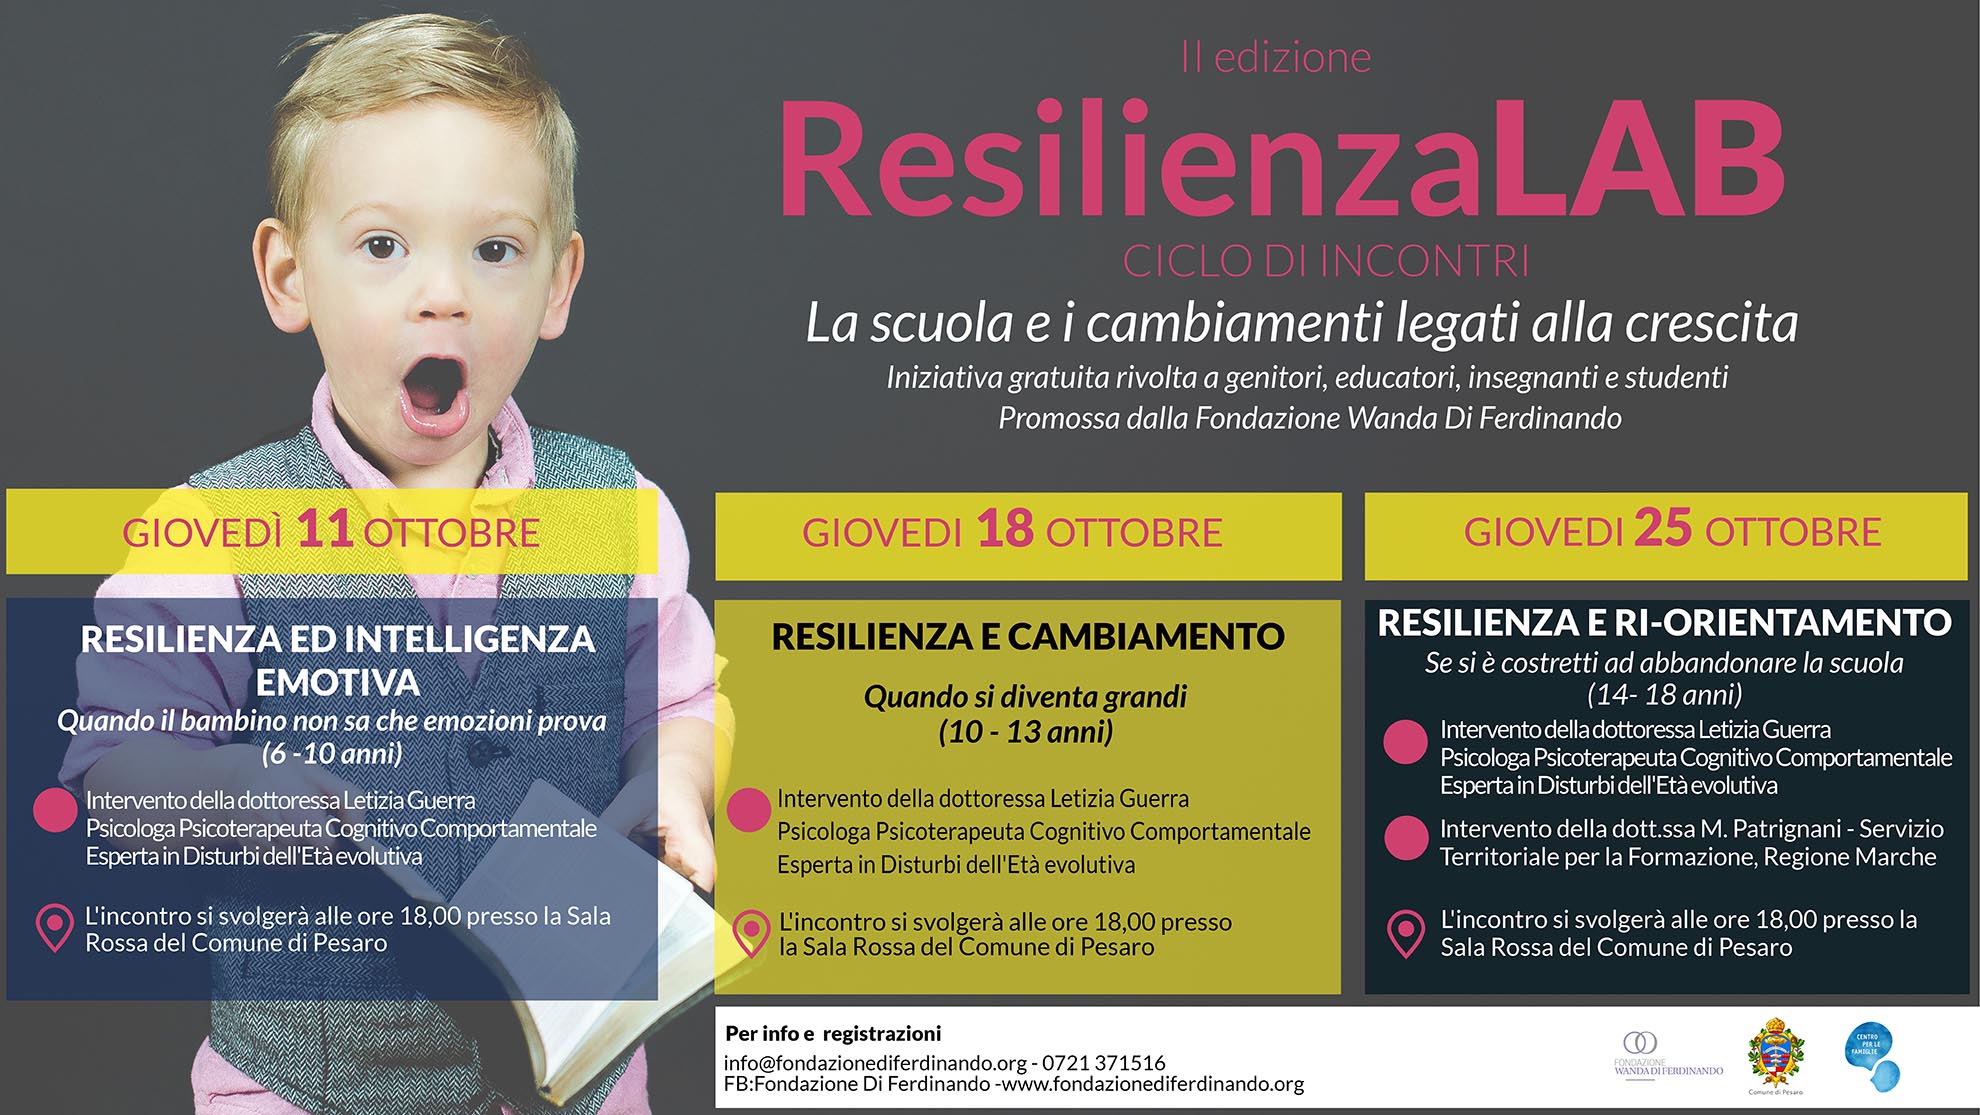 ResilienzaLAB: la seconda edizione dedicata alla scuola!